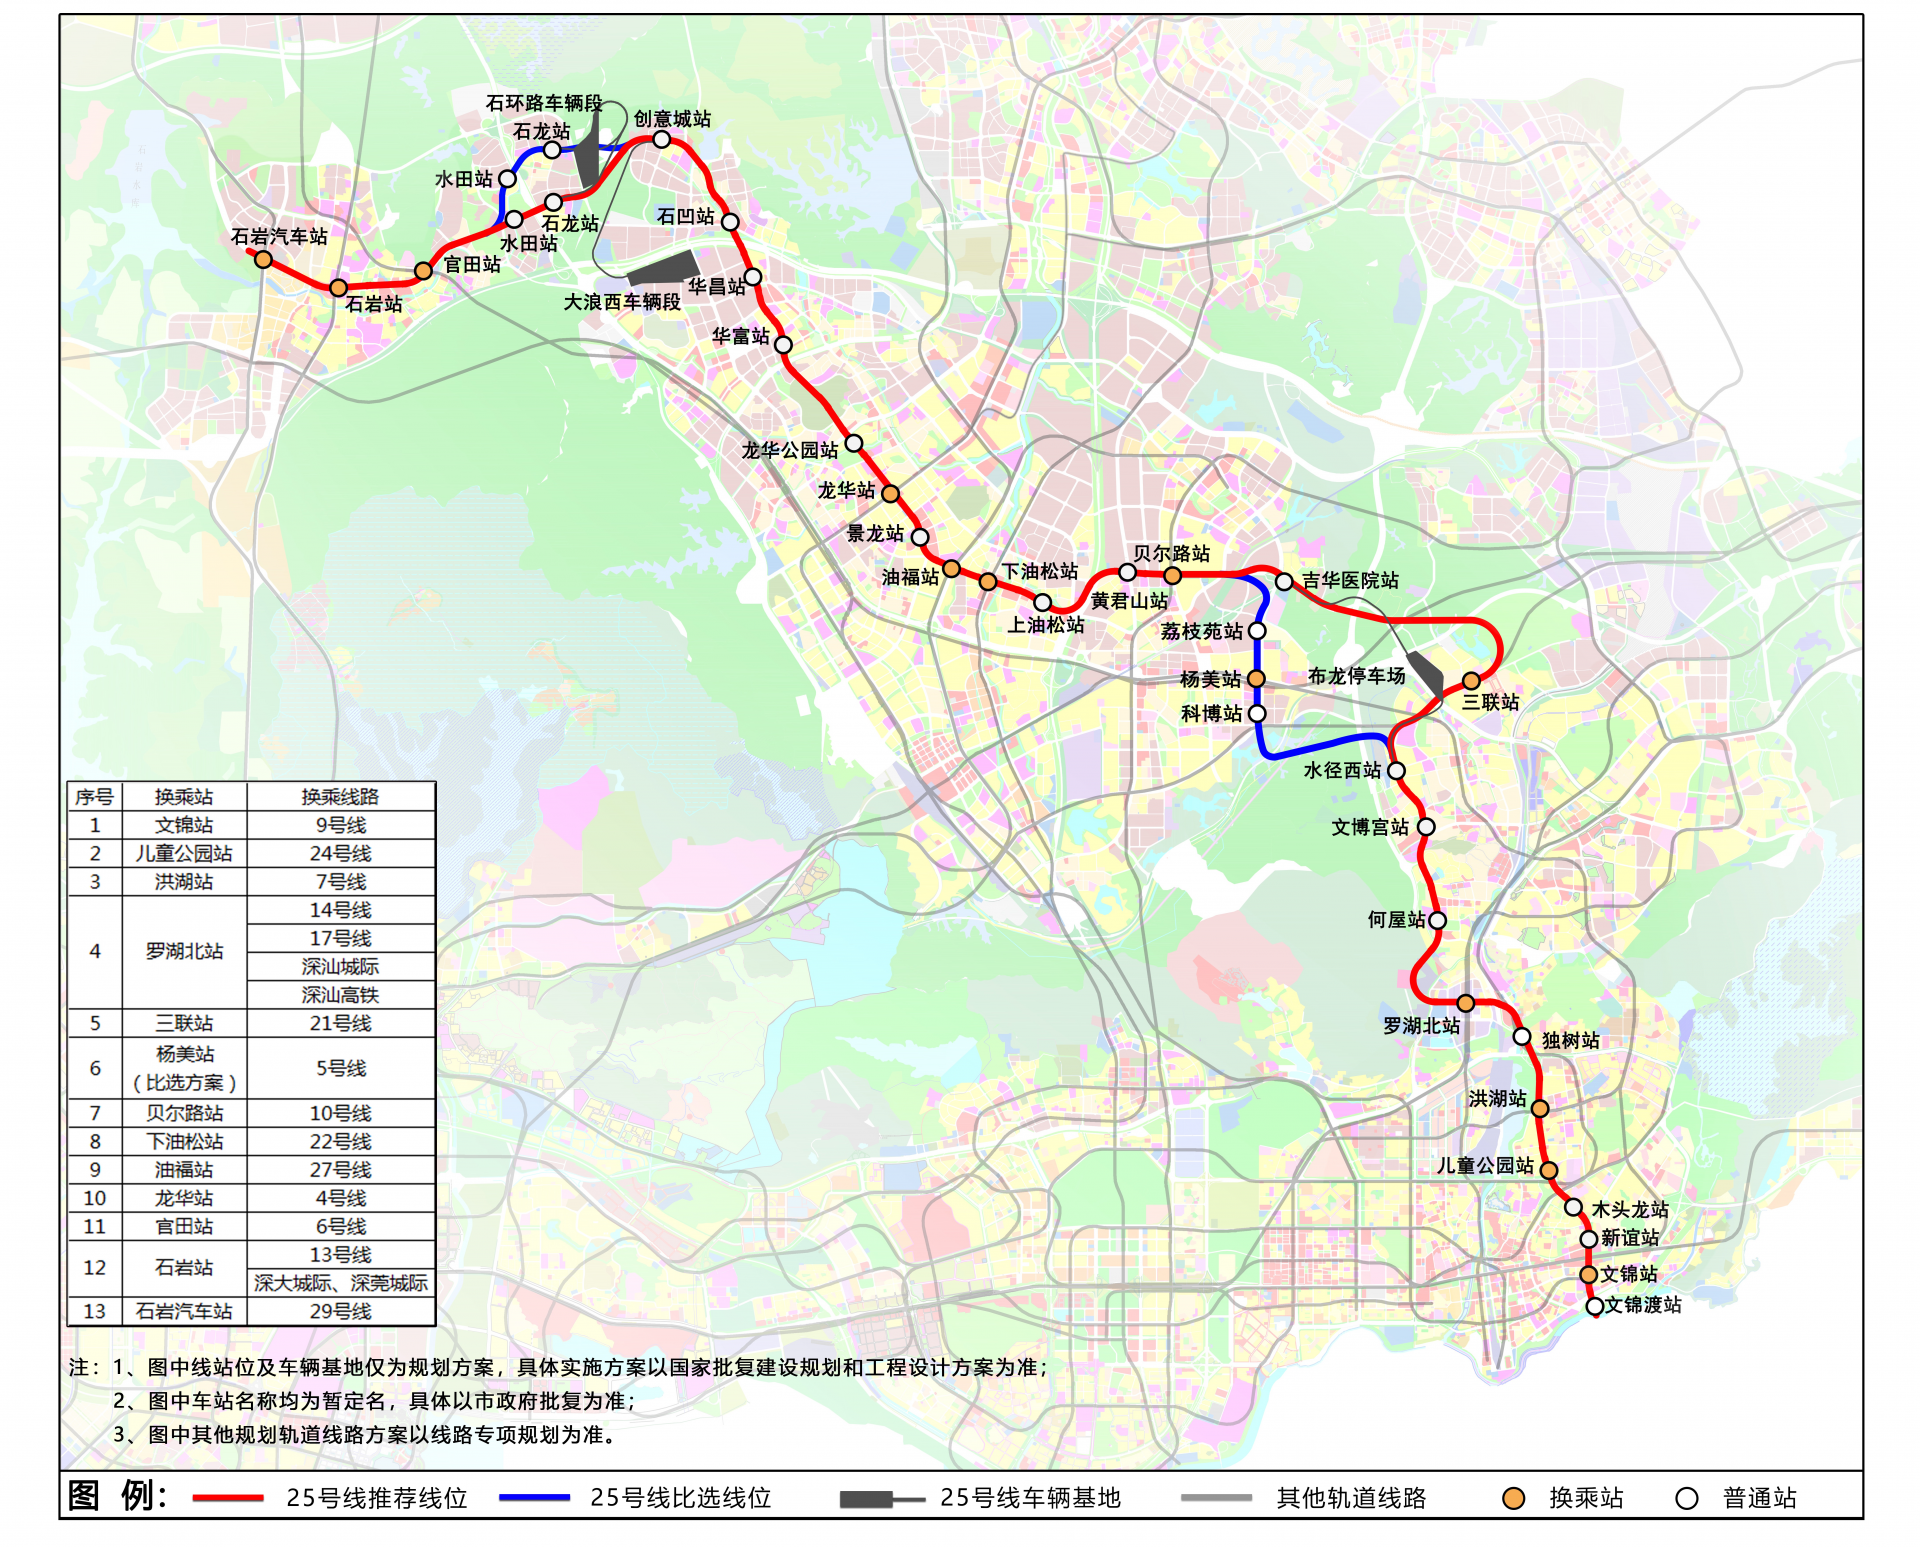 覆盖罗湖至龙华轨道盲区 深圳地铁25号线将缓解跨关交通压力